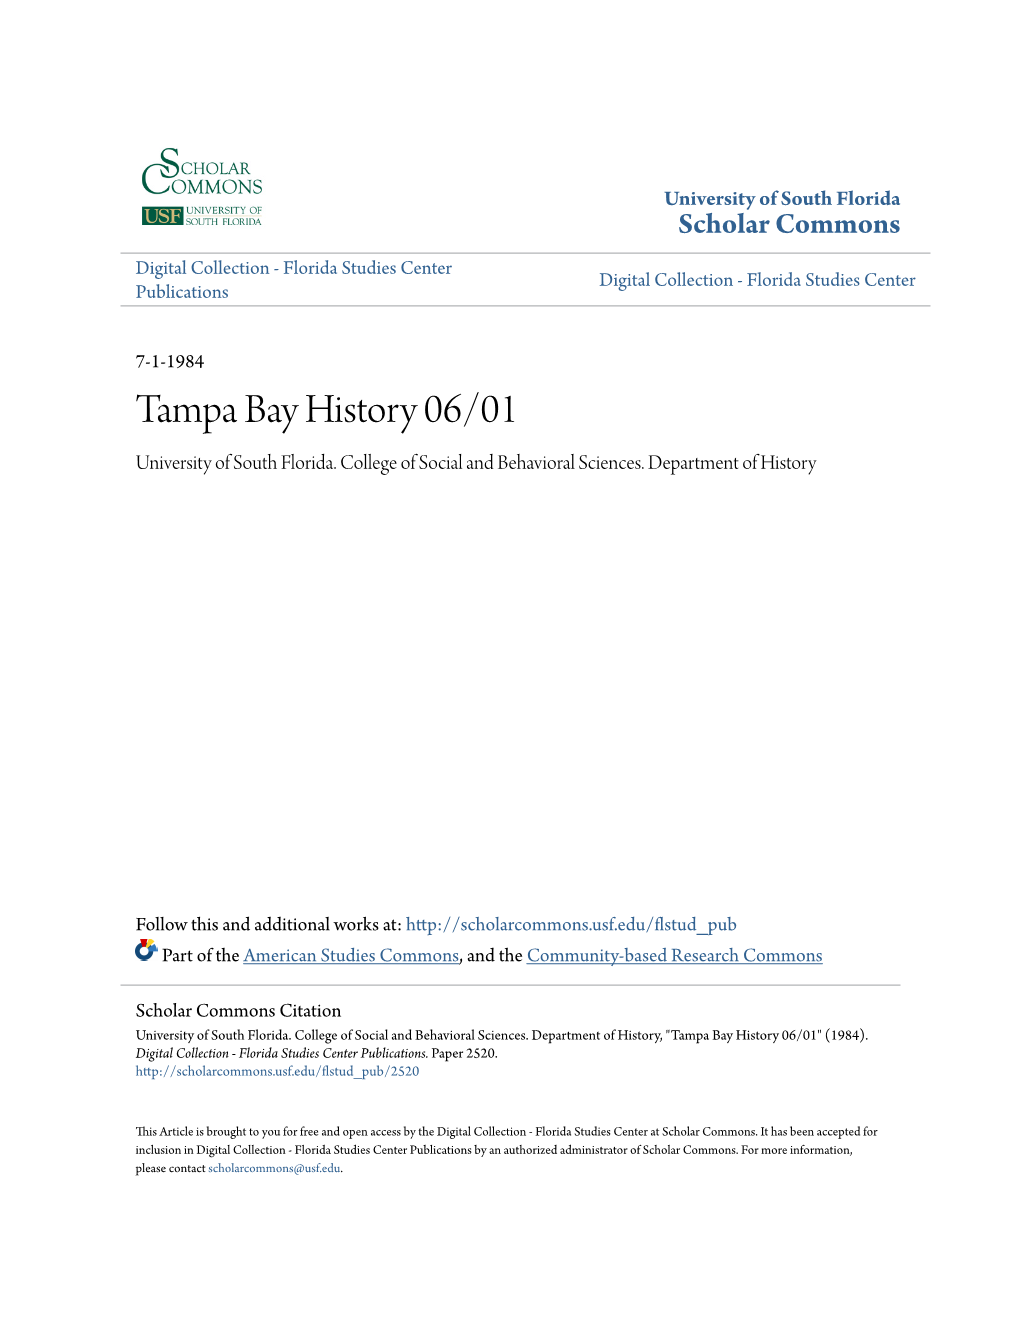 Tampa Bay History 06/01 University of South Florida